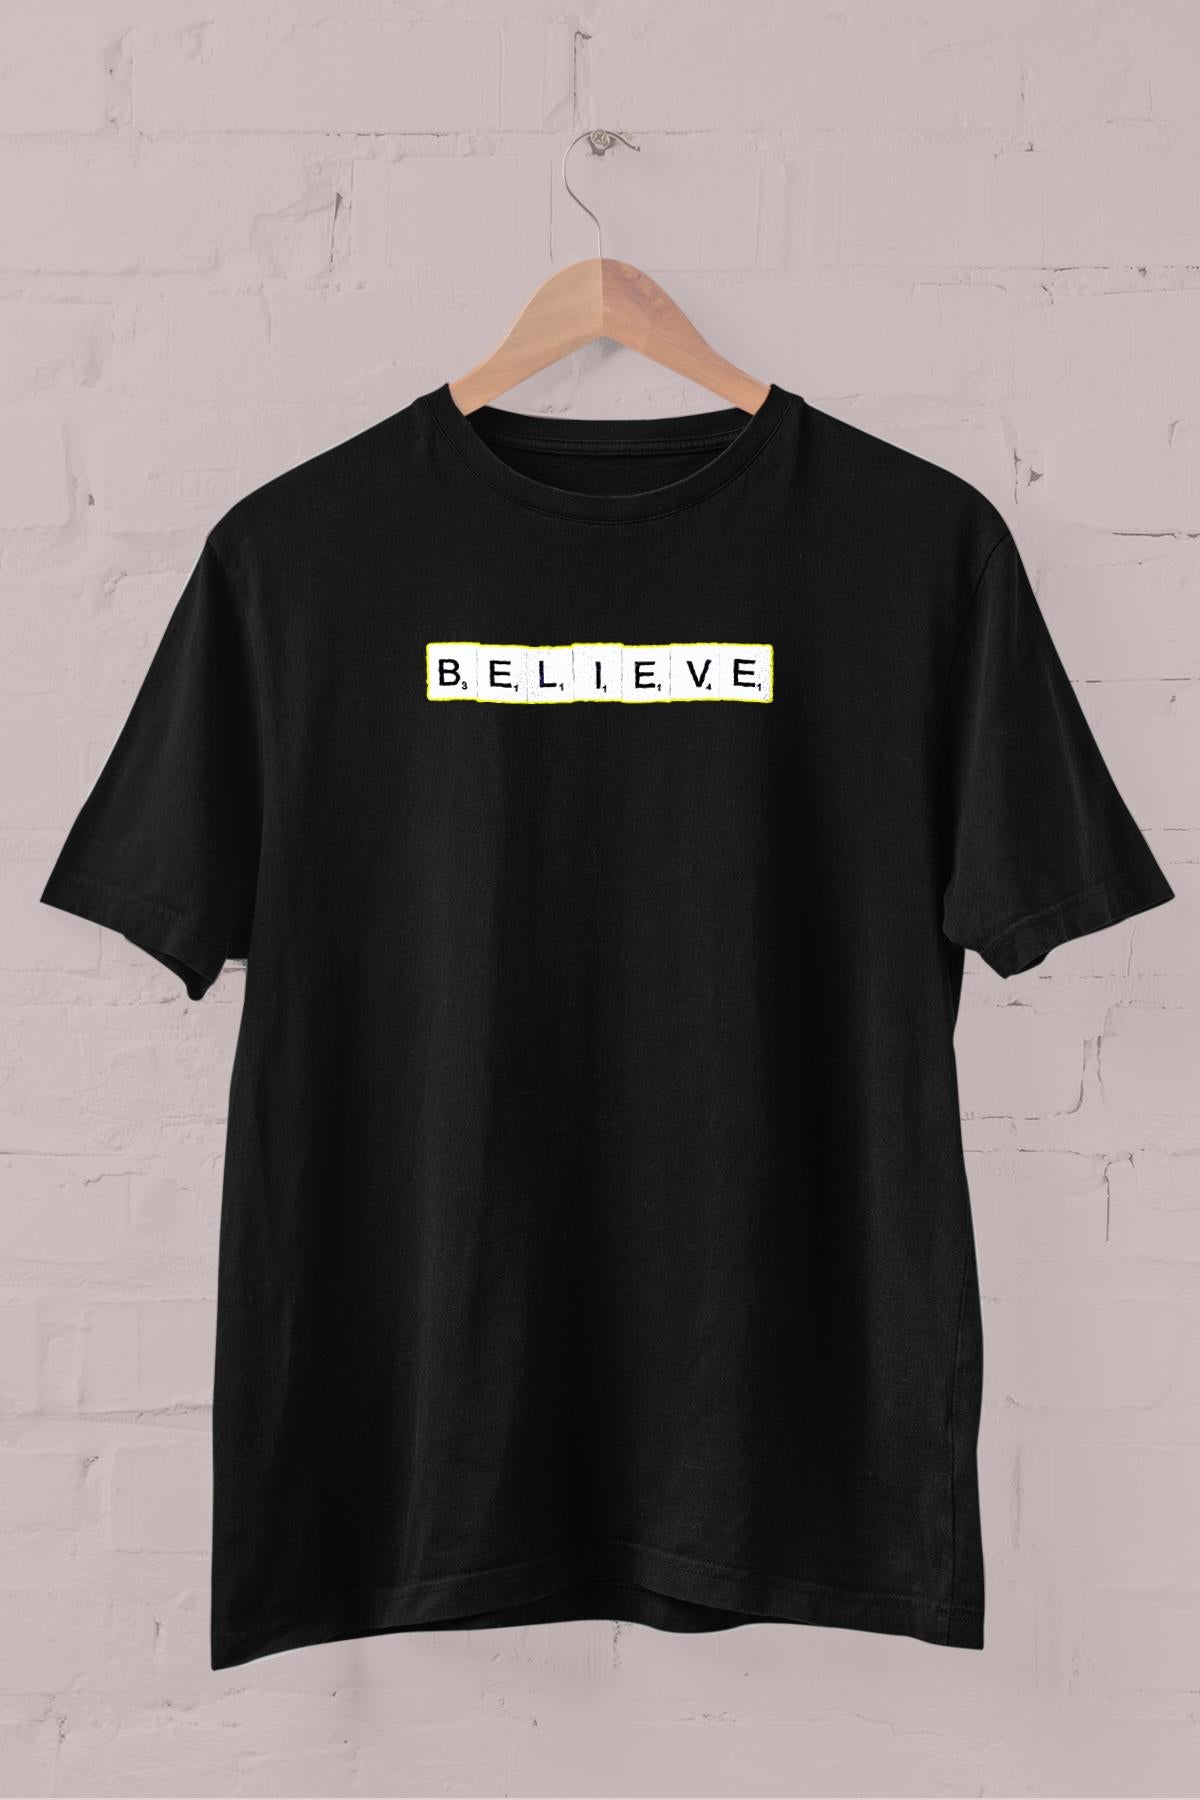 Believe slogan printed Crew Neck men's t -shirt